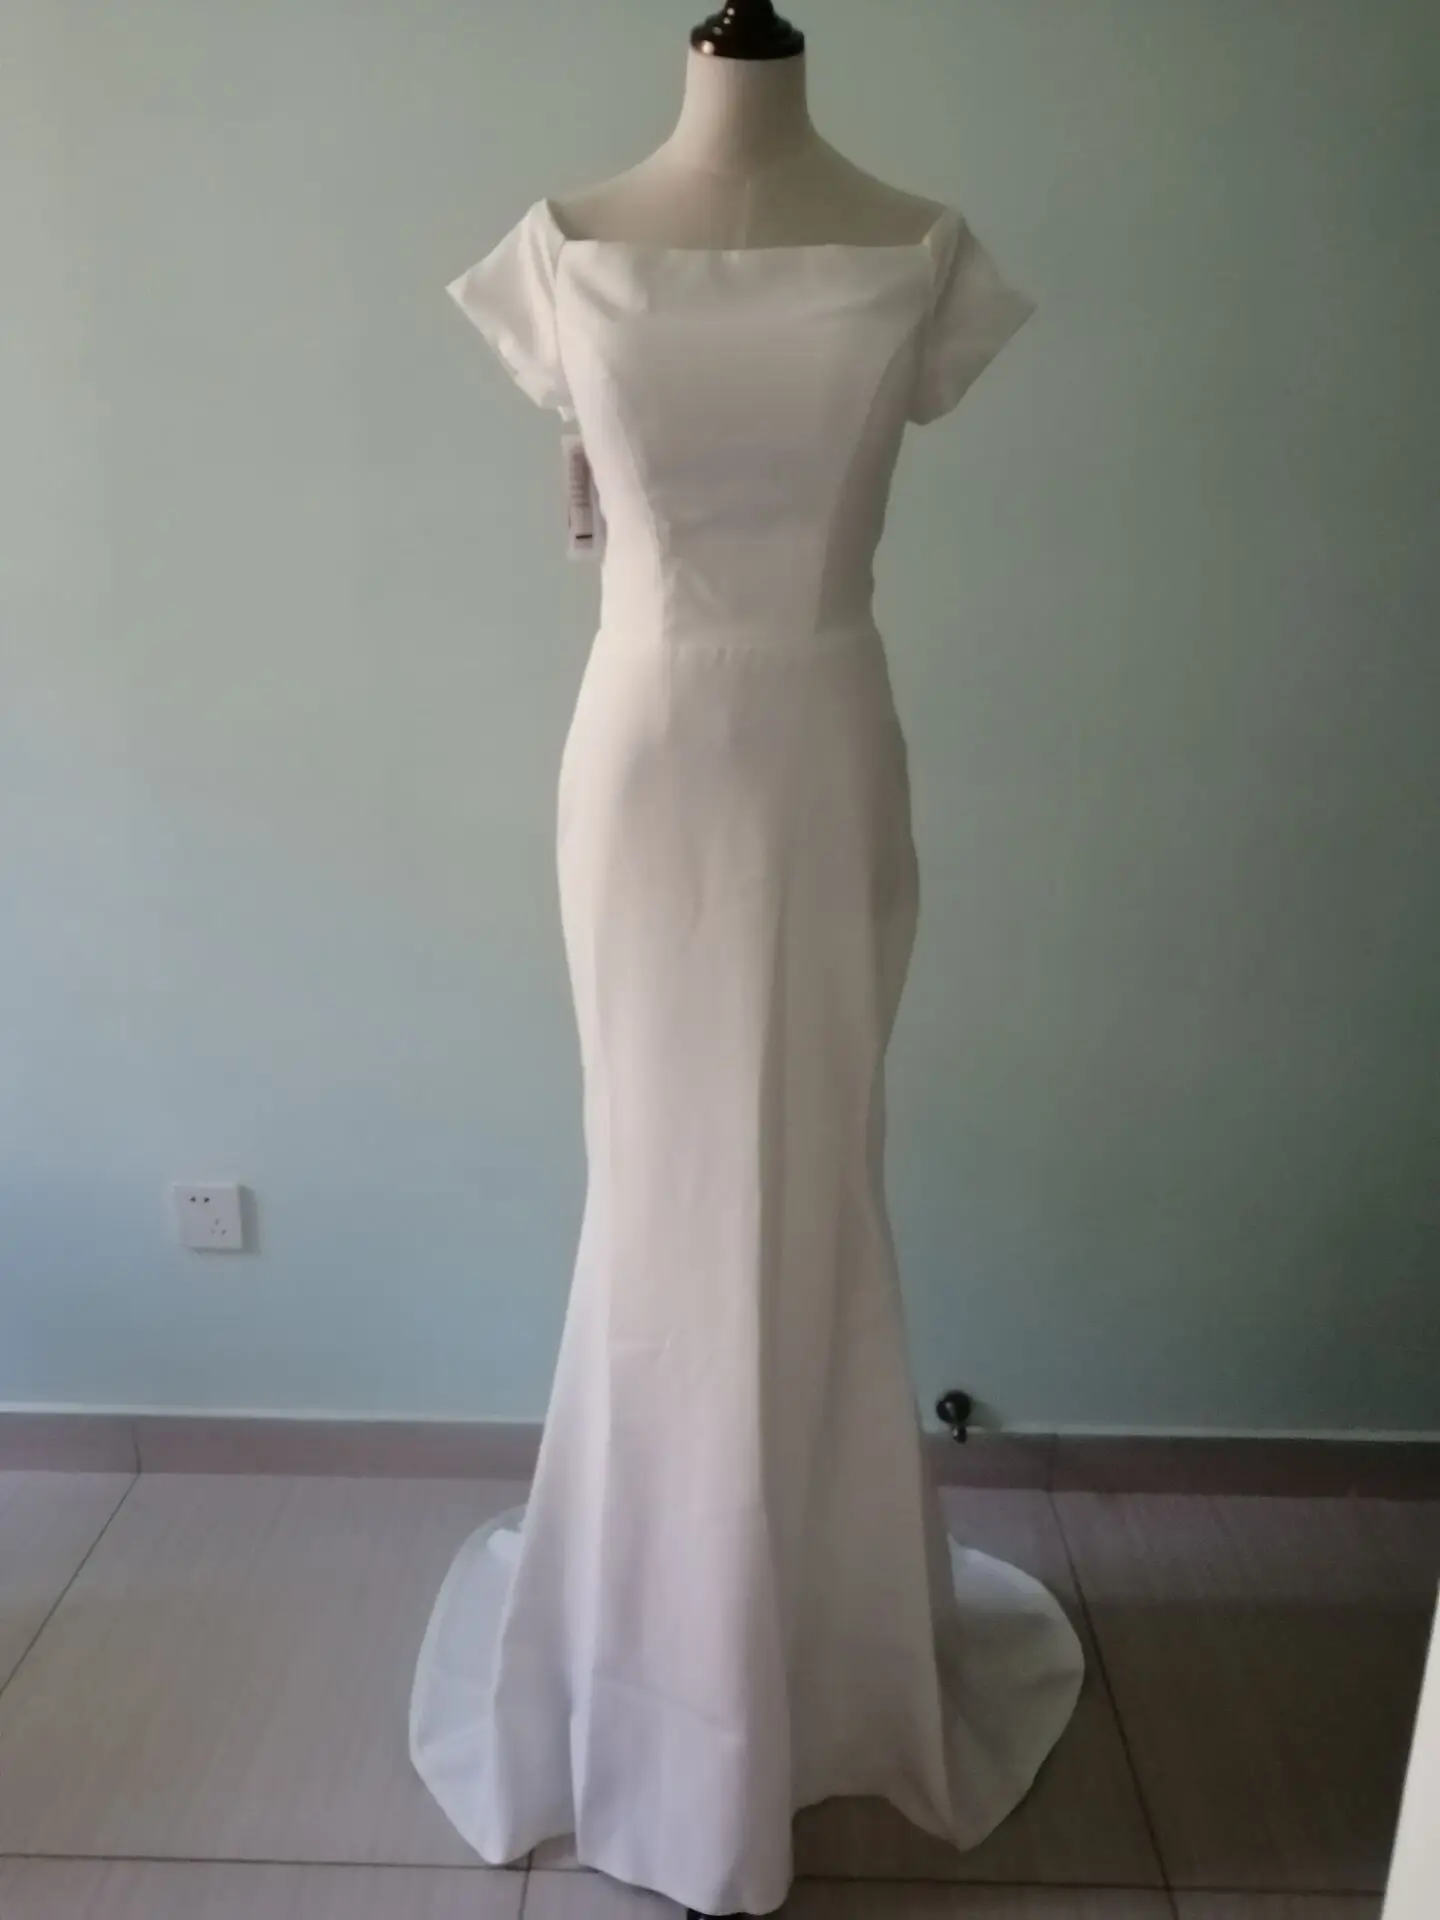 KAUNISSINA элегантные свадебные платья индивидуальный заказ женское платье с